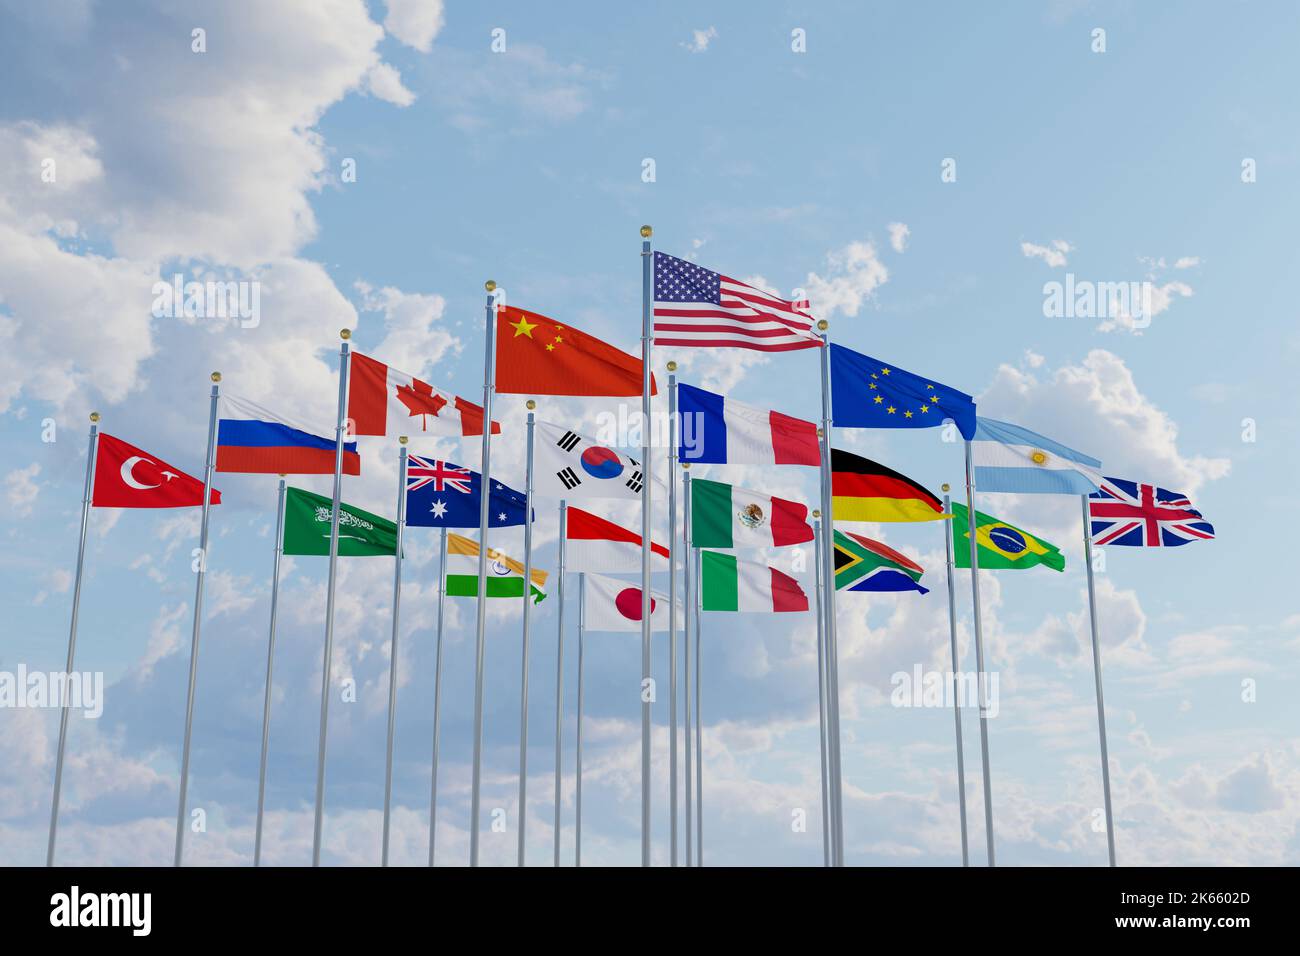 Sommet du drapeau G20 drapeaux de la soie pays des membres Groupe des vingt politiques 2022 rencontres d'unité des dirigeants mondiaux G 20 organisation avec mât sur b Banque D'Images